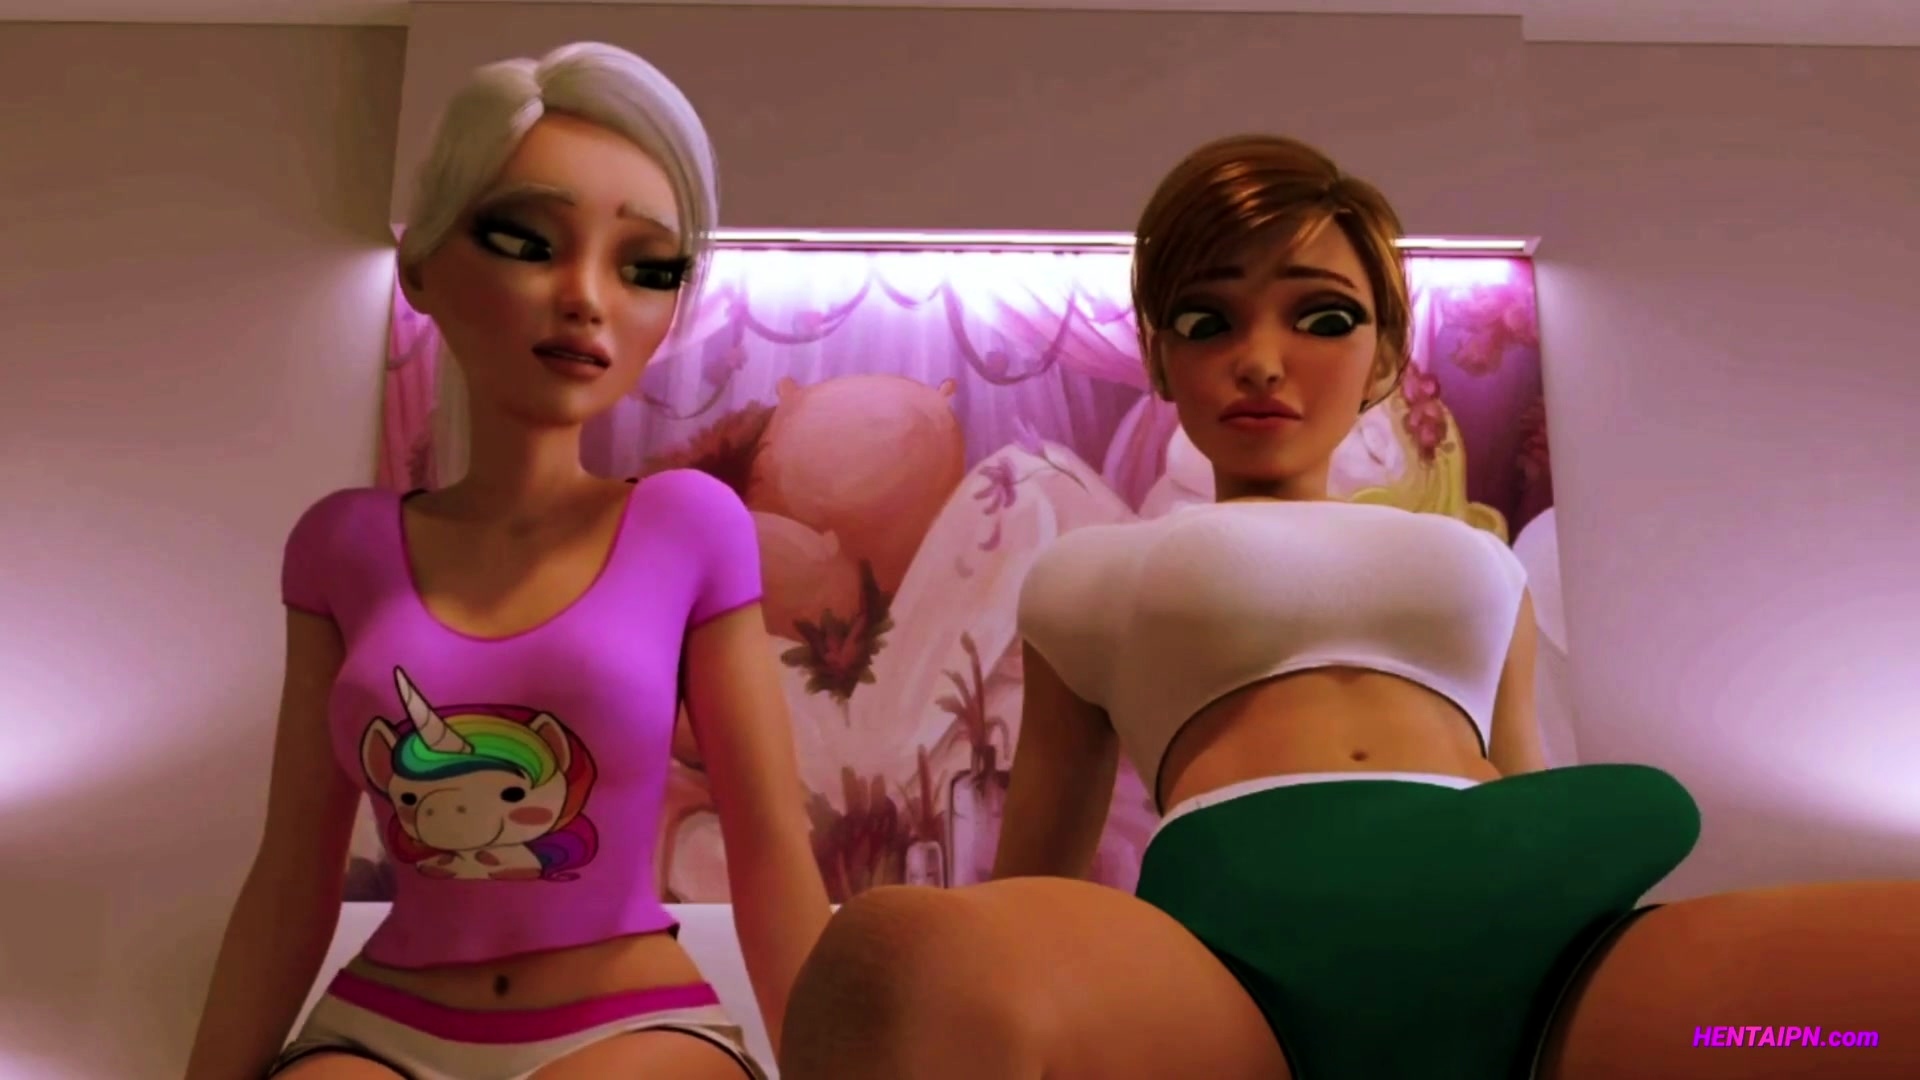 Futa 3d Porn - FUTA Erotic 3D Sex Animation (ENG Voices) Video at Porn Lib